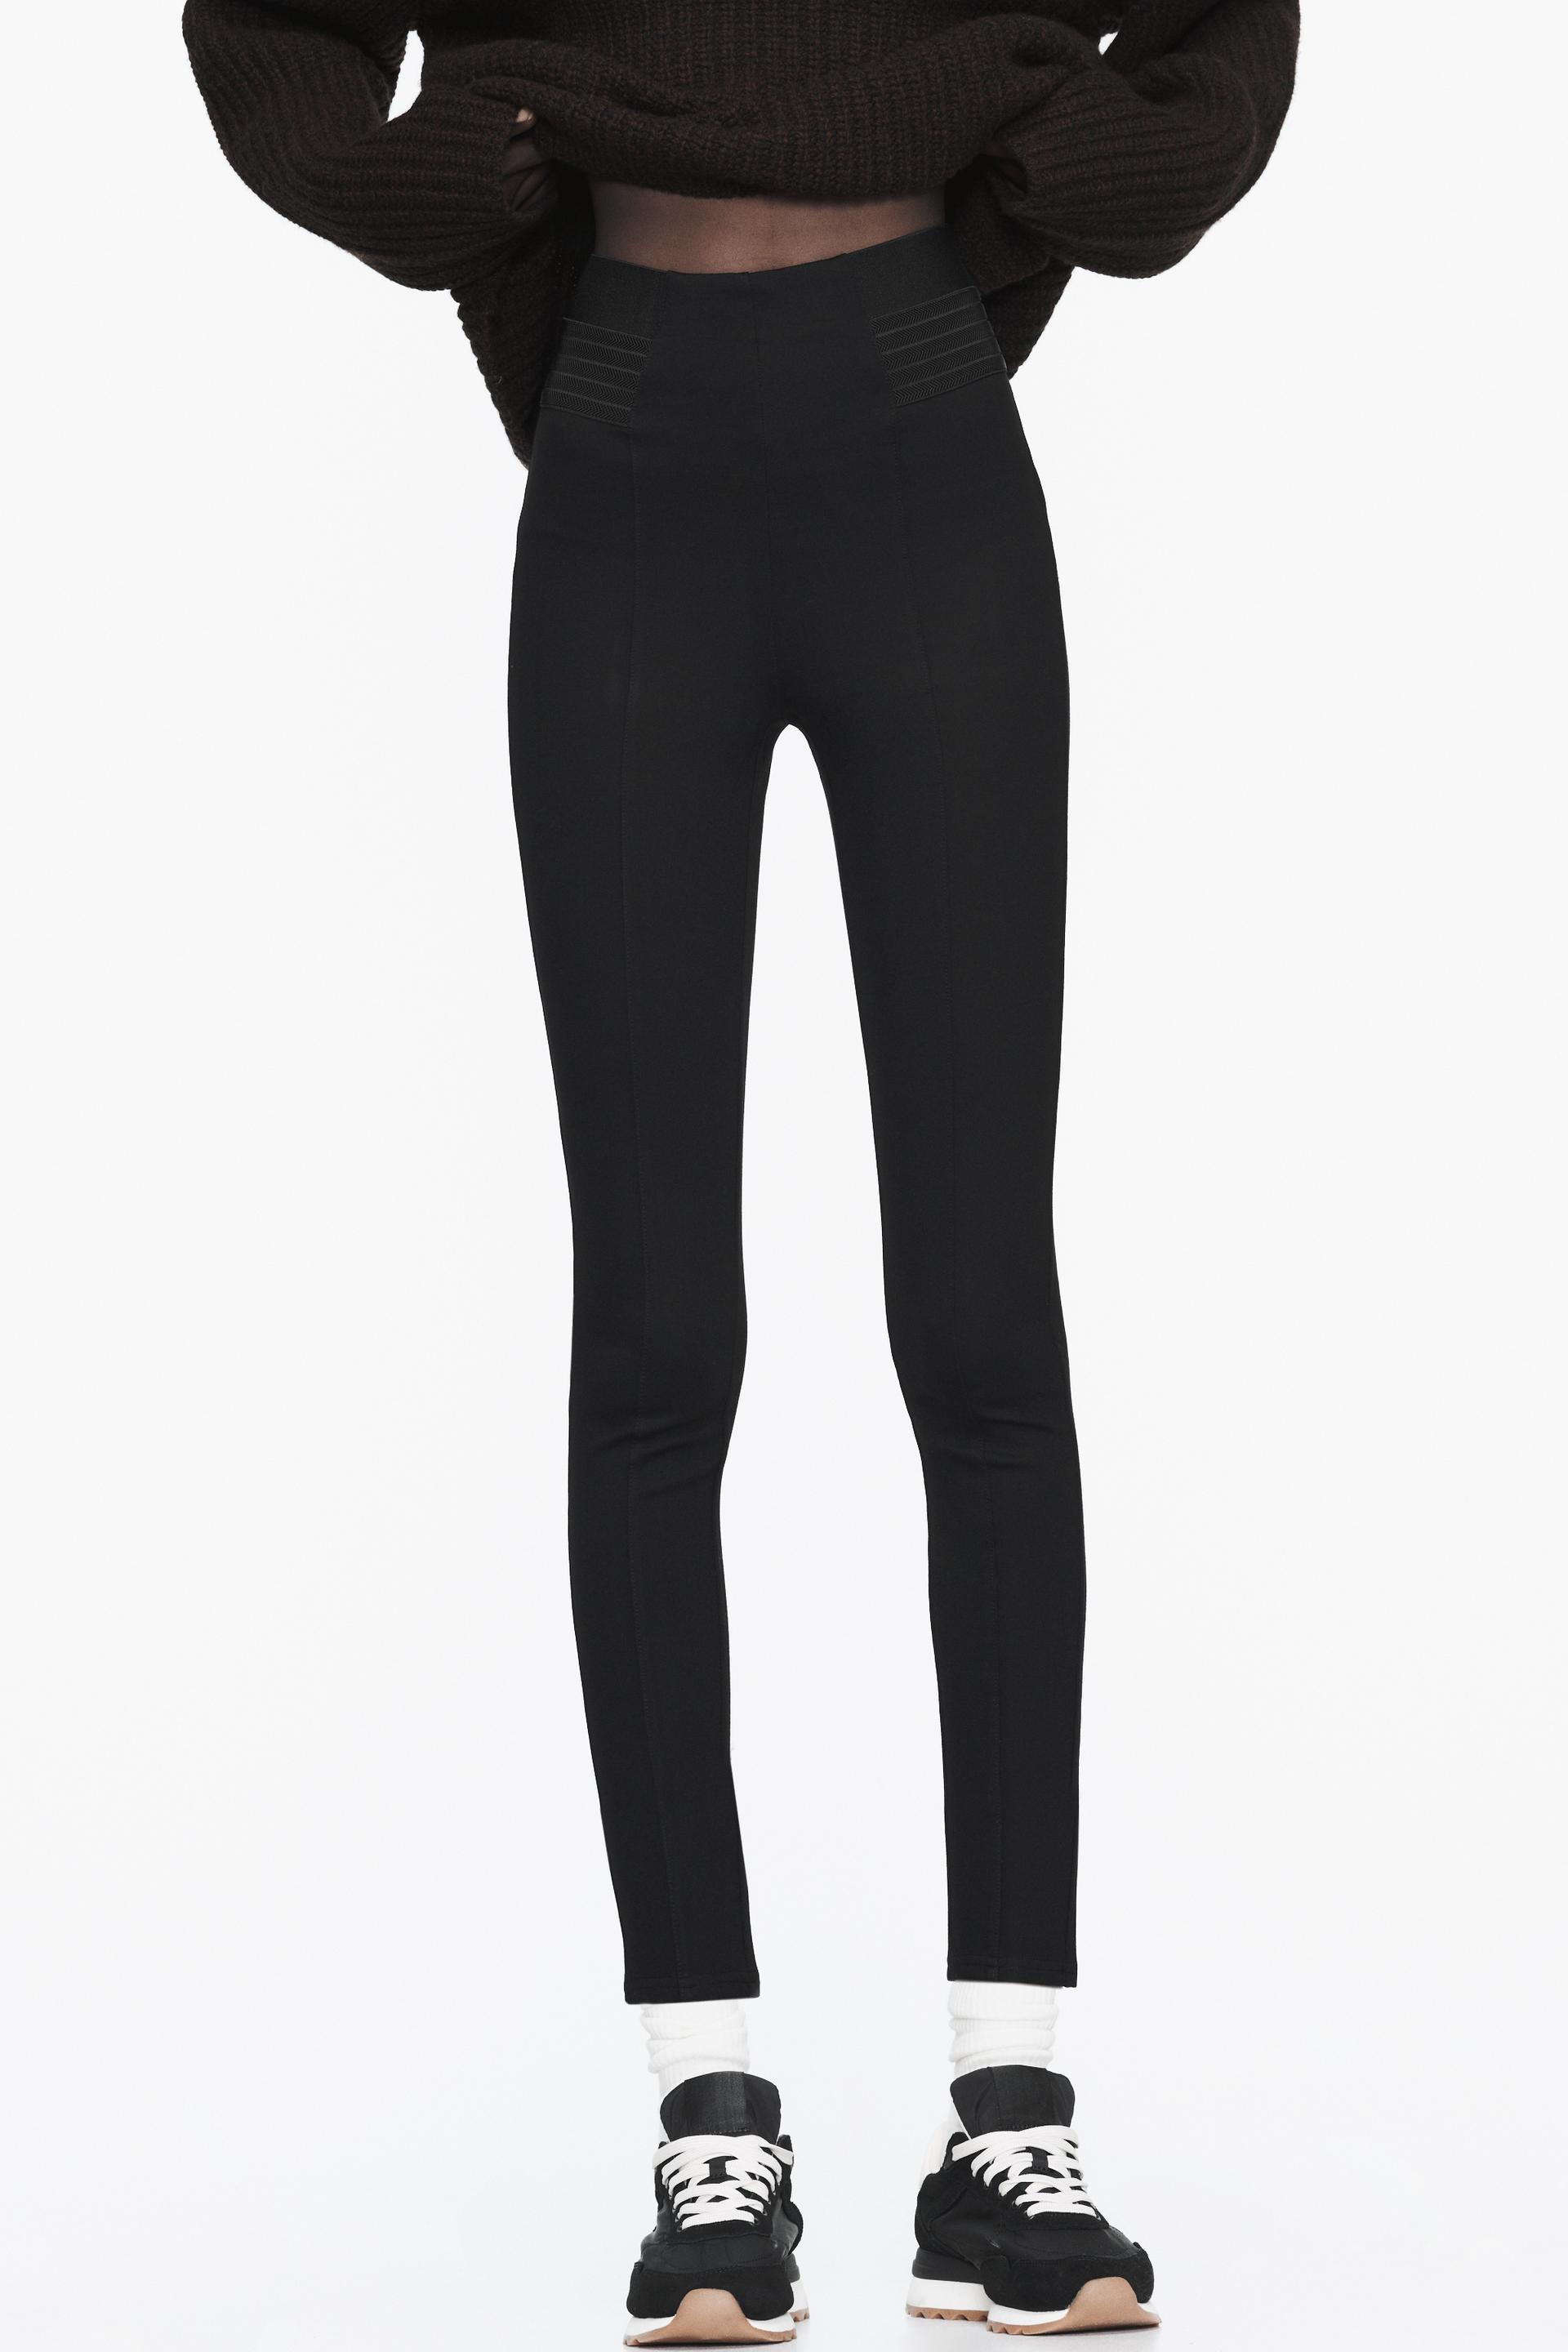 Buy Women's Styli High Waist Elastic Waistband Velvet Leggings Online